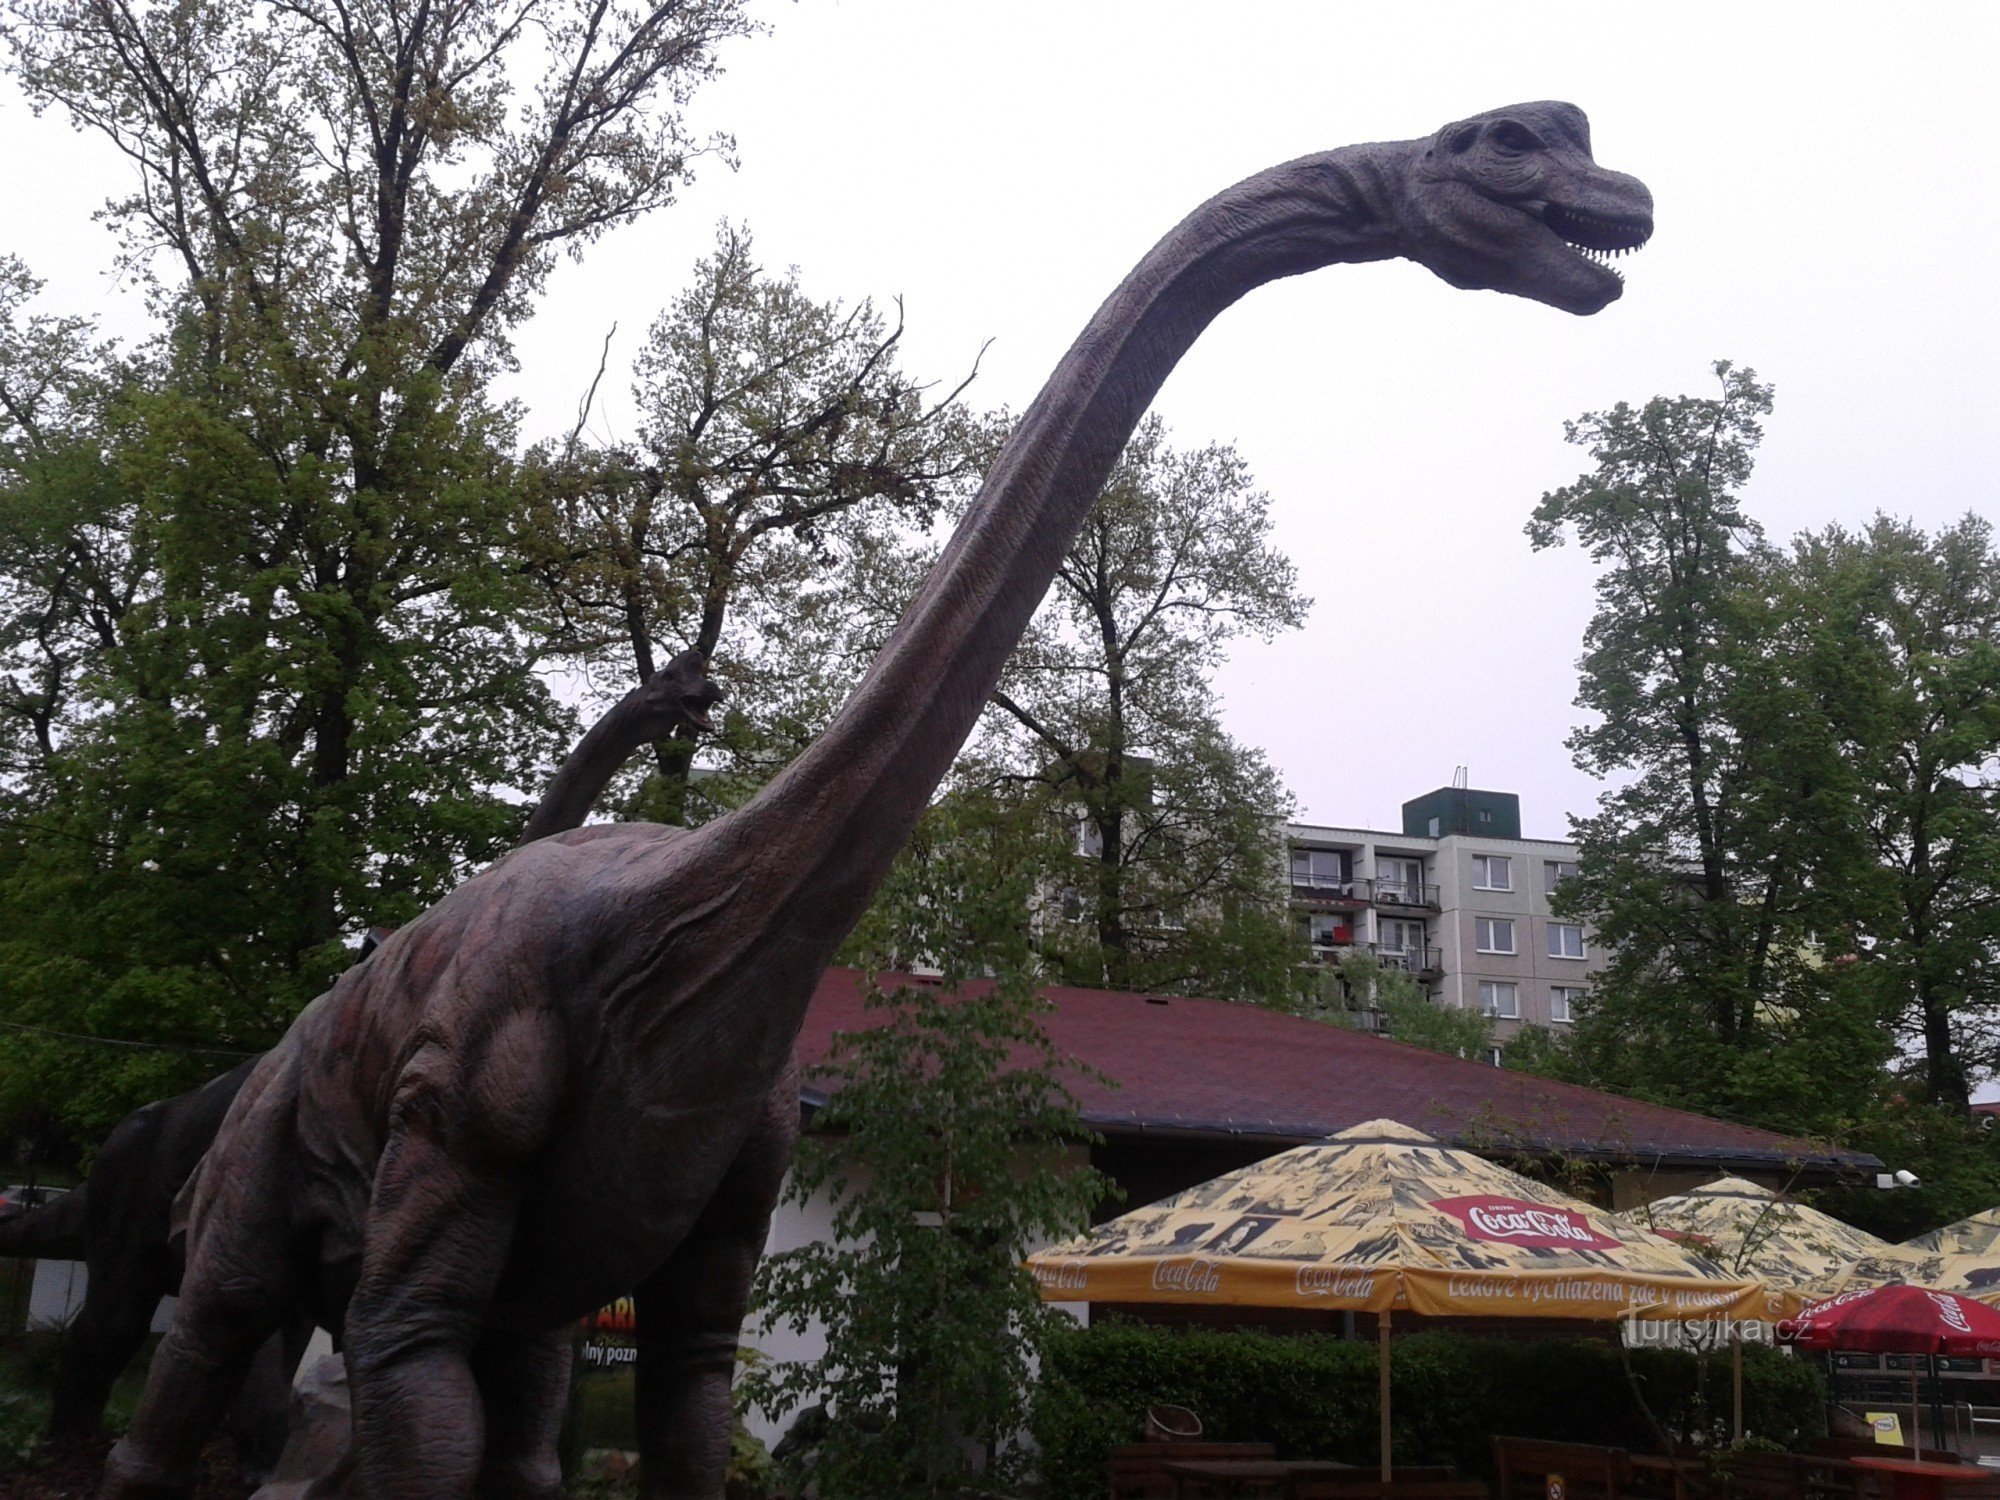 Dinopark Pilzno